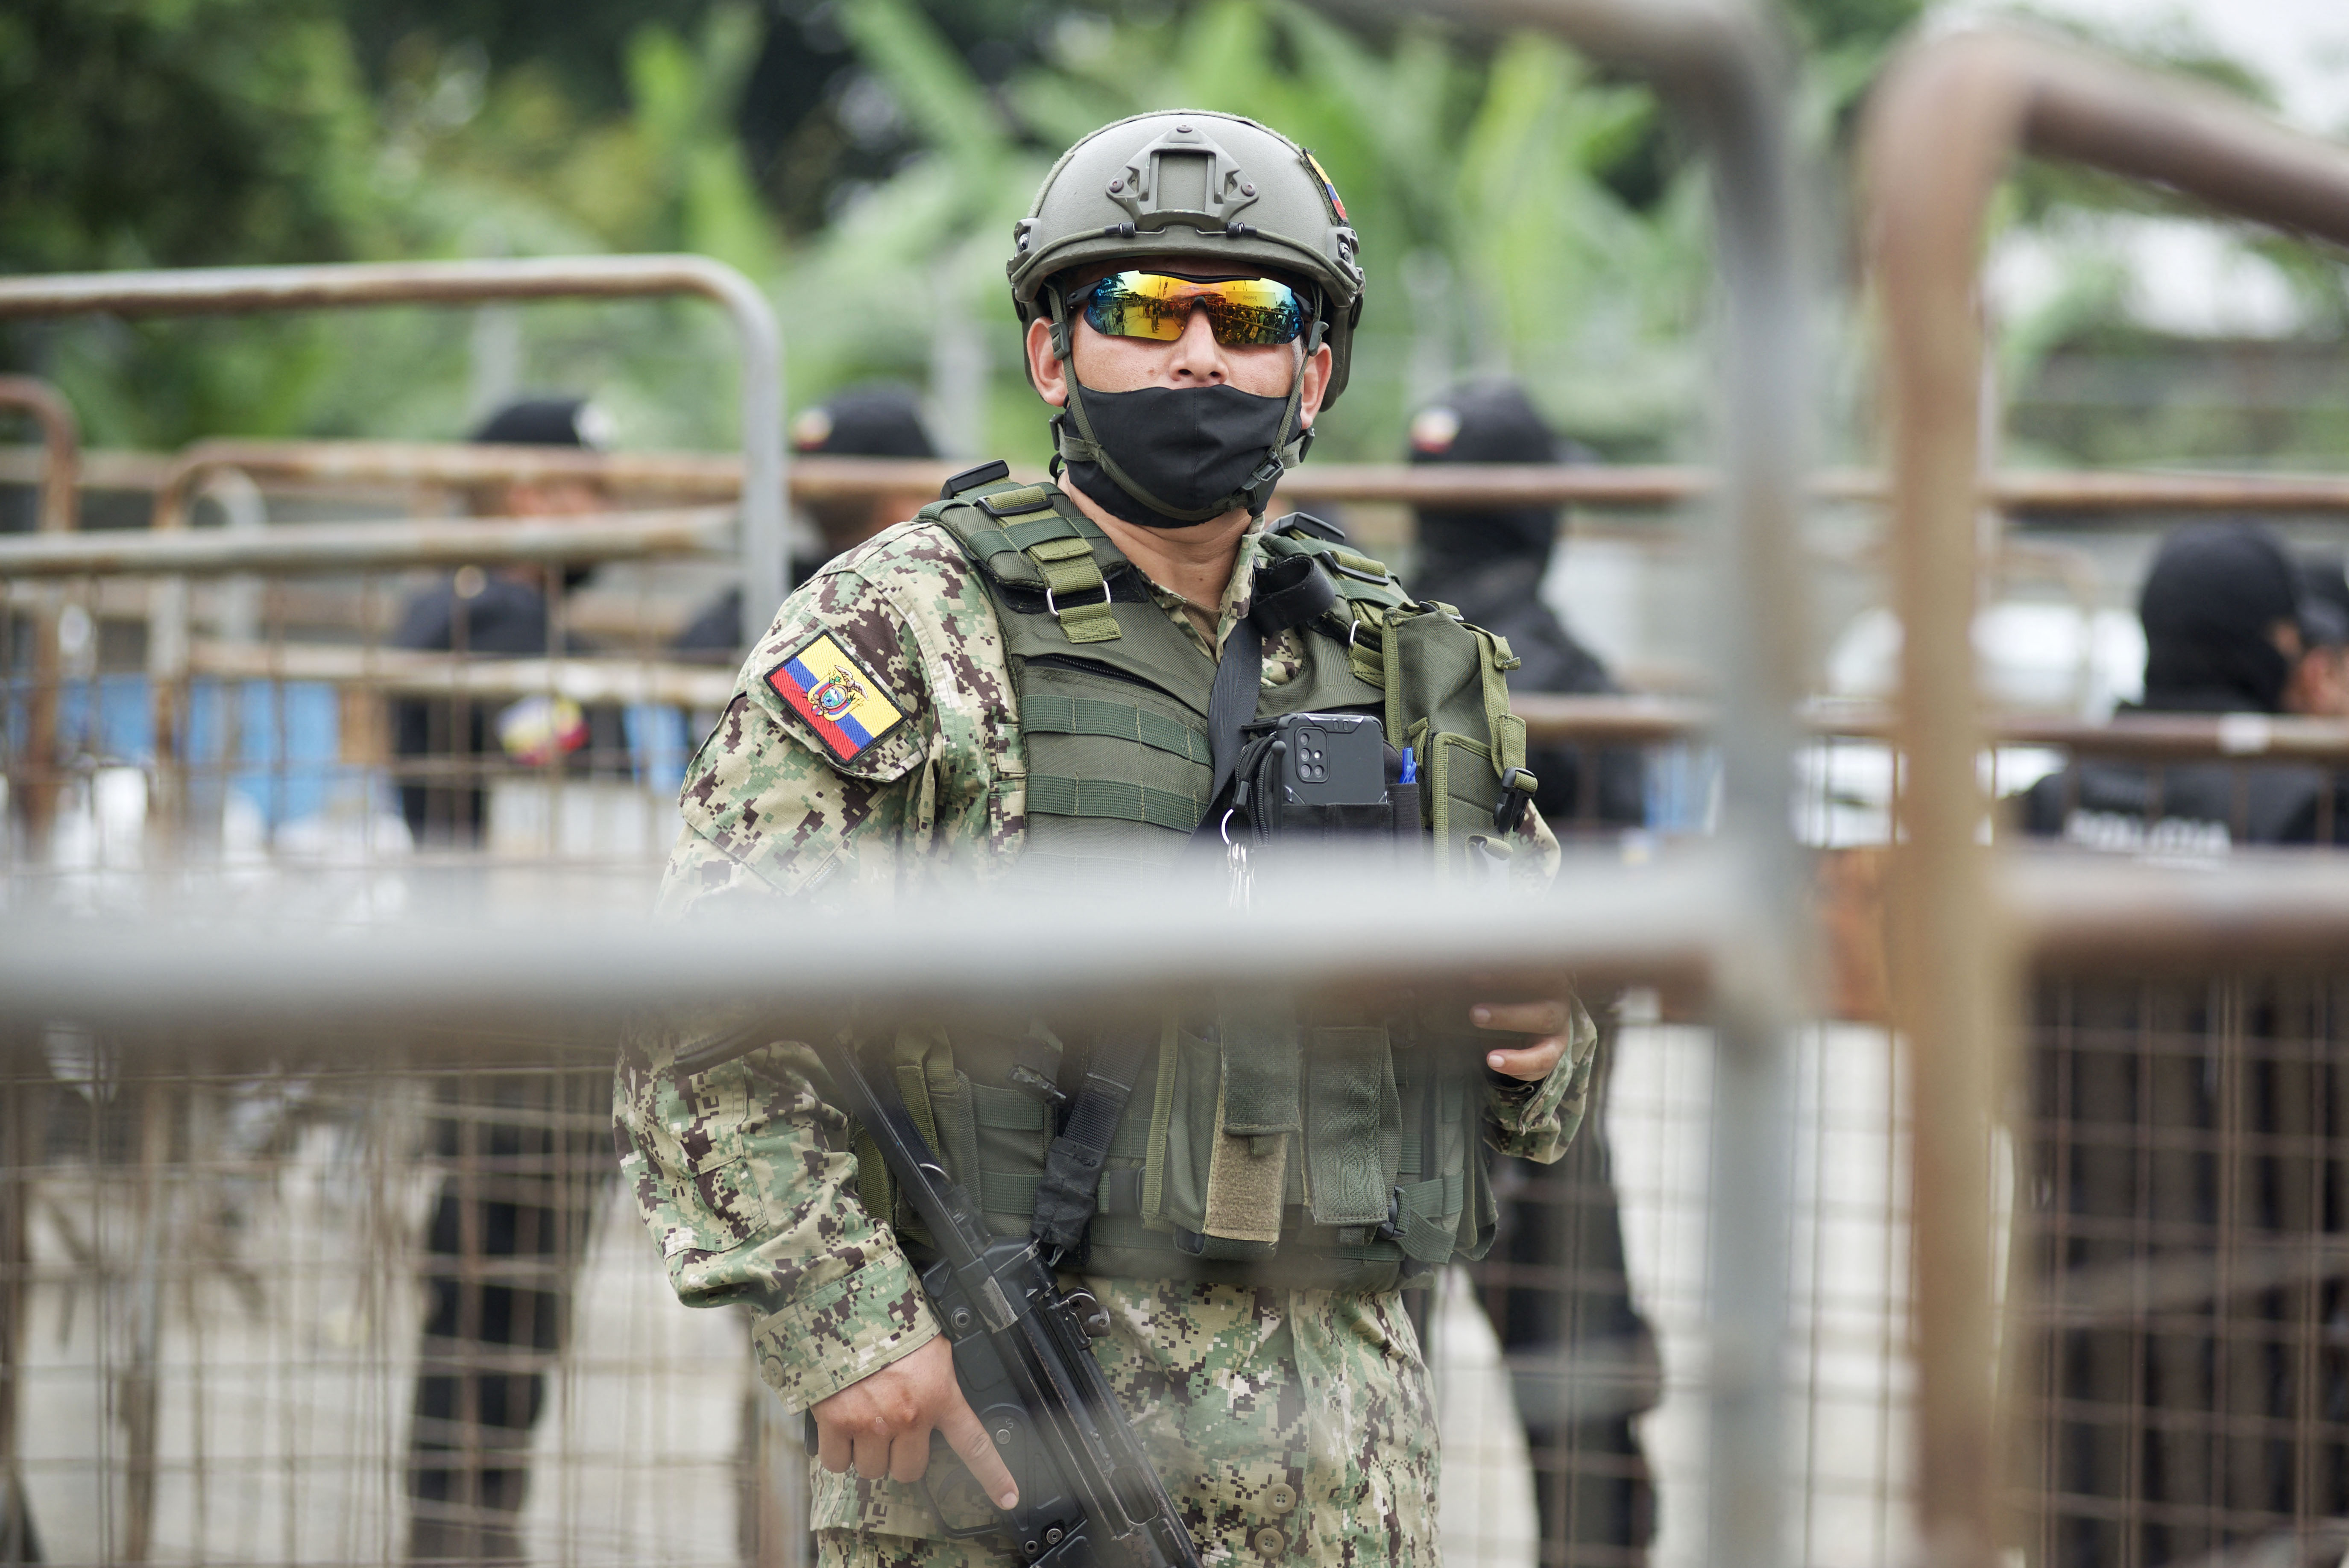 Un policía militar hace guardia afuera de la prisión Guayas 1 después de un estallido de violencia entre los reclusos que dejó 58 muertos en Guayaquil, Ecuador, el 13 de noviembre de 2021.(Photo by Fernando Mendez / AFP)